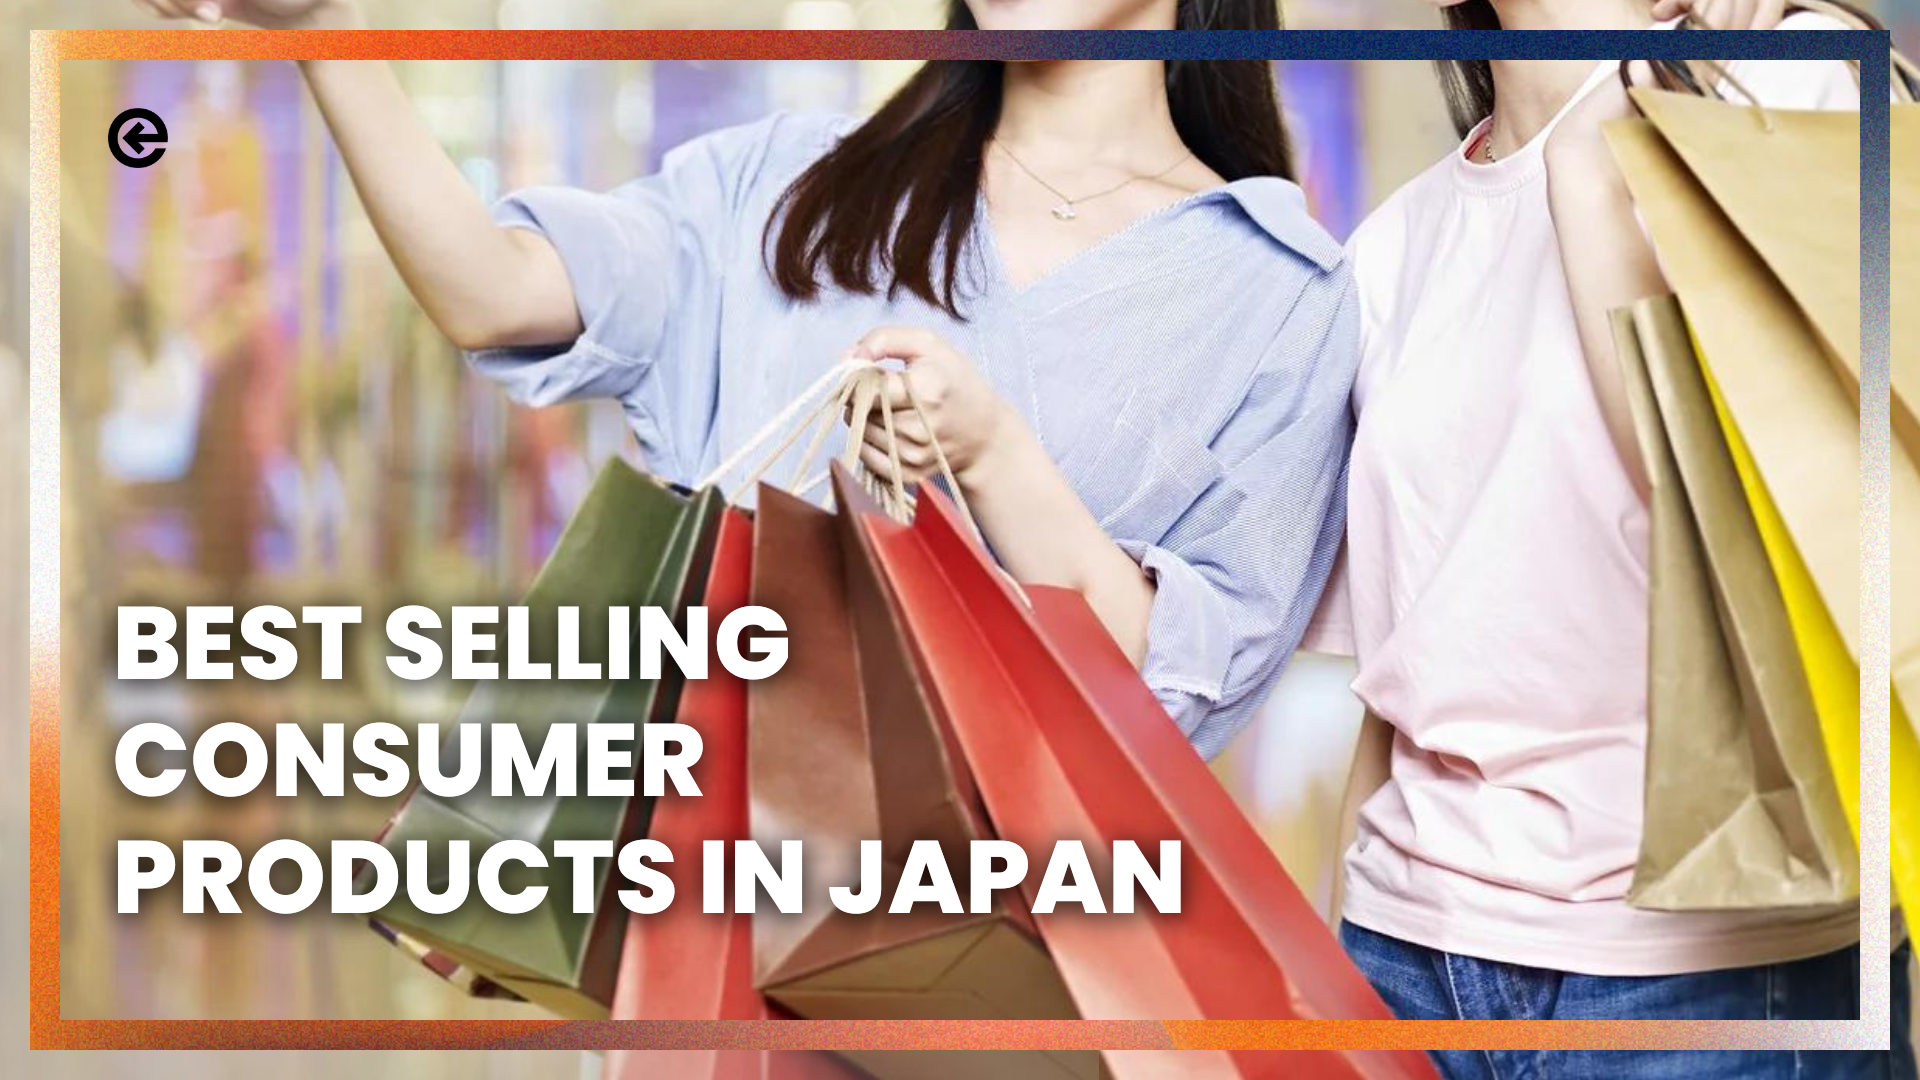 Los 10 productos de consumo más vendidos en Japón